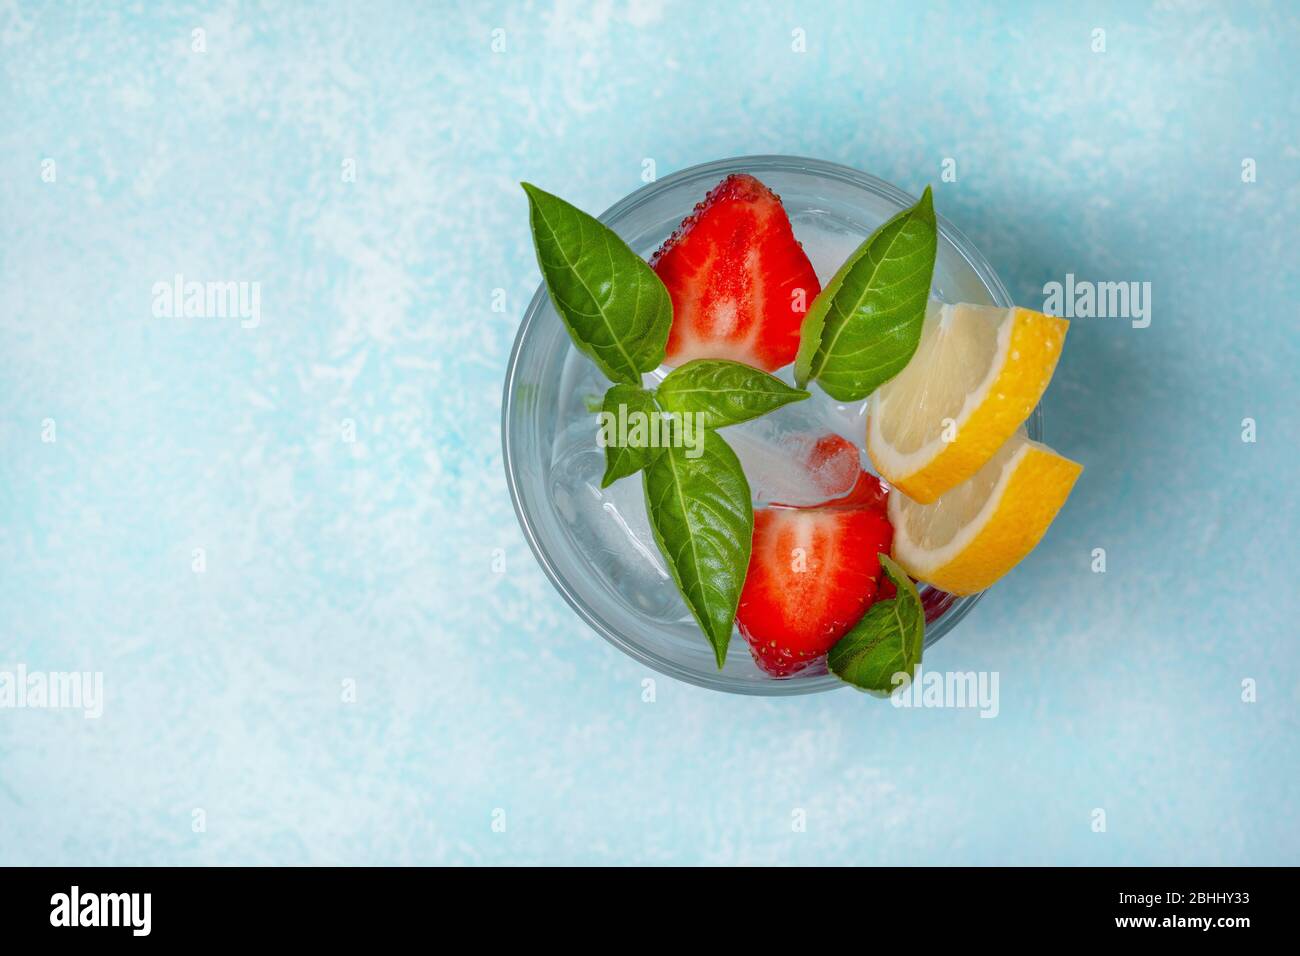 limonade aux fraises avec basilic dans un verre sur fond bleu. vue de dessus Banque D'Images